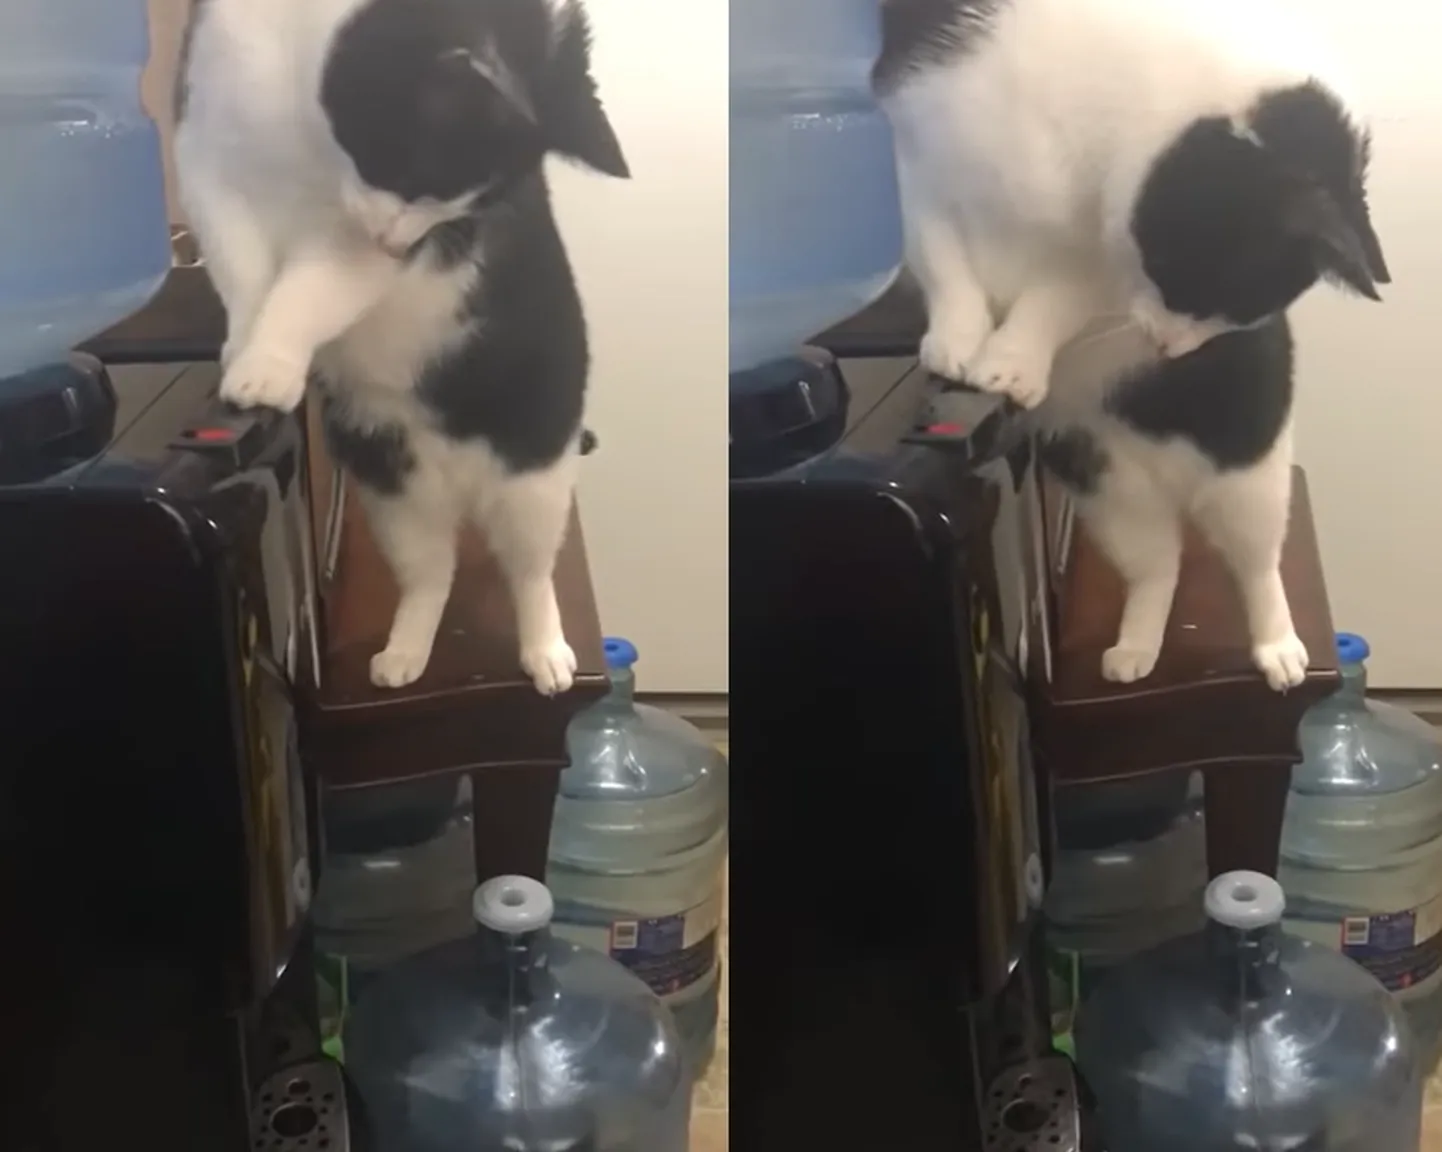 Kass õppis veeautomaati kasutama, kuid vett kätte ei saanud